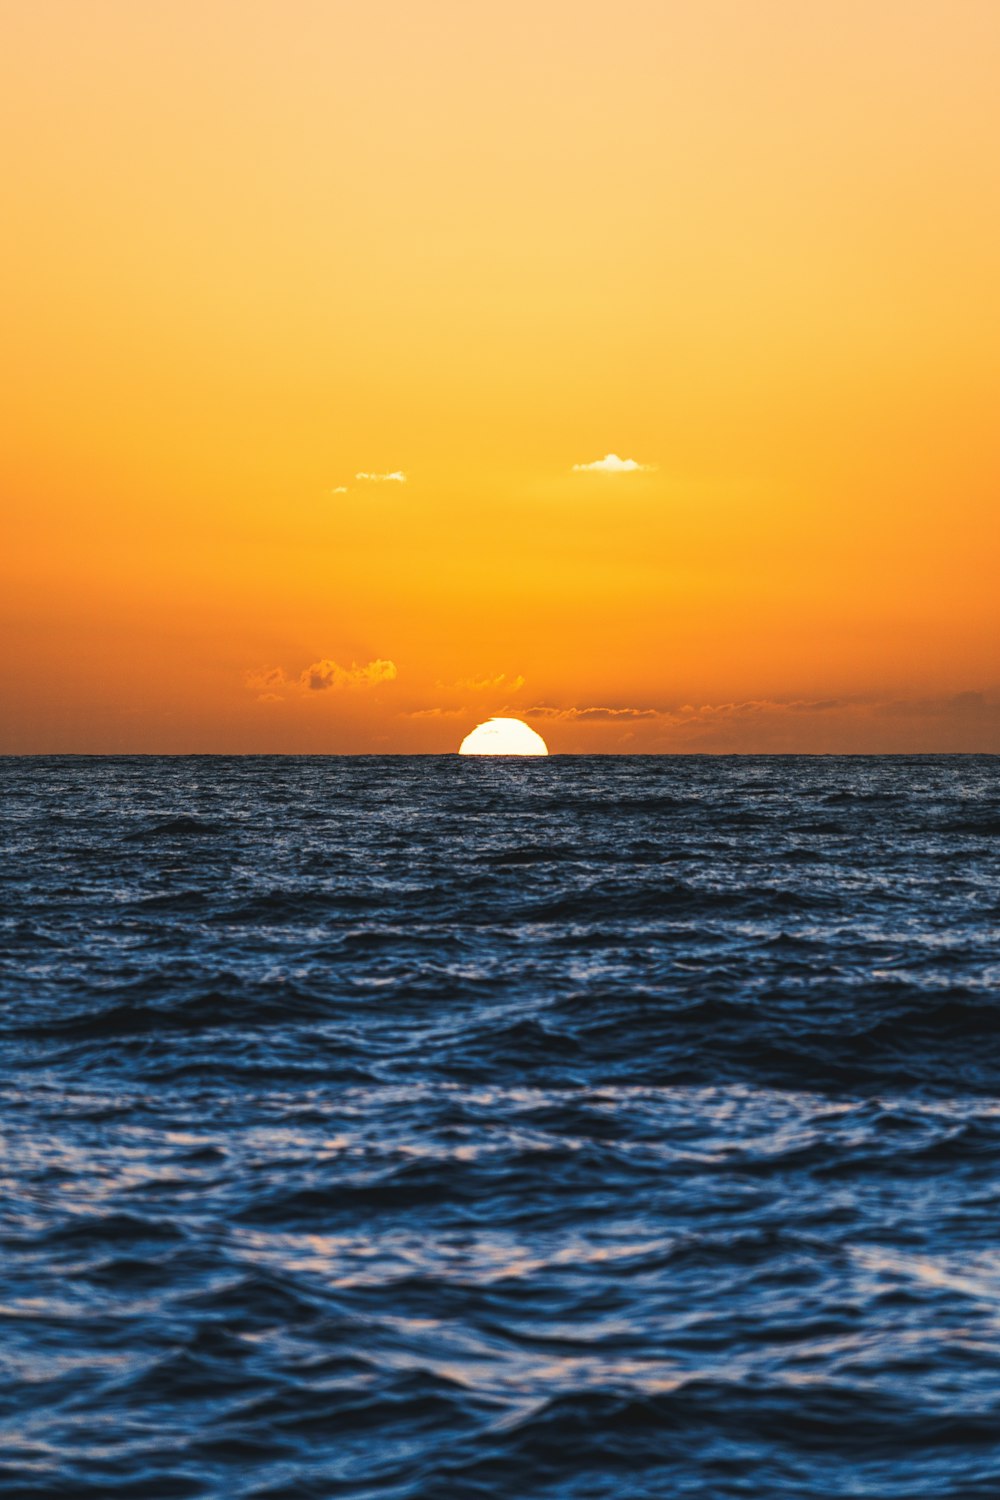 Die Sonne geht über dem Meer unter, mit einem Boot in der Ferne